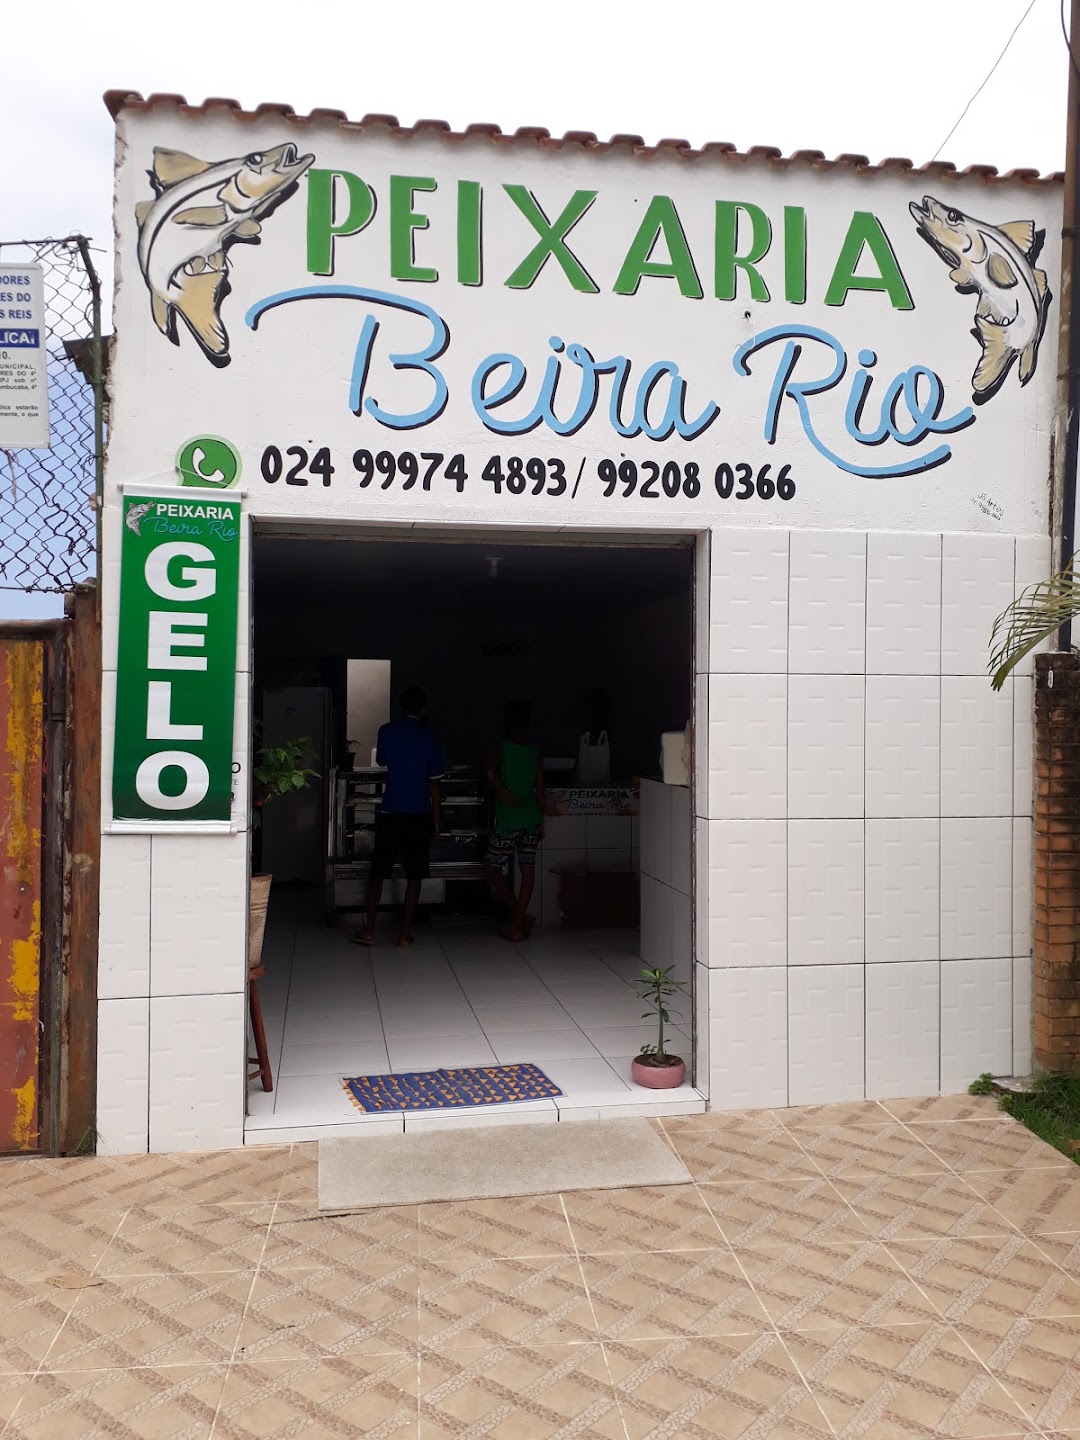 Peixaria Beira Rio